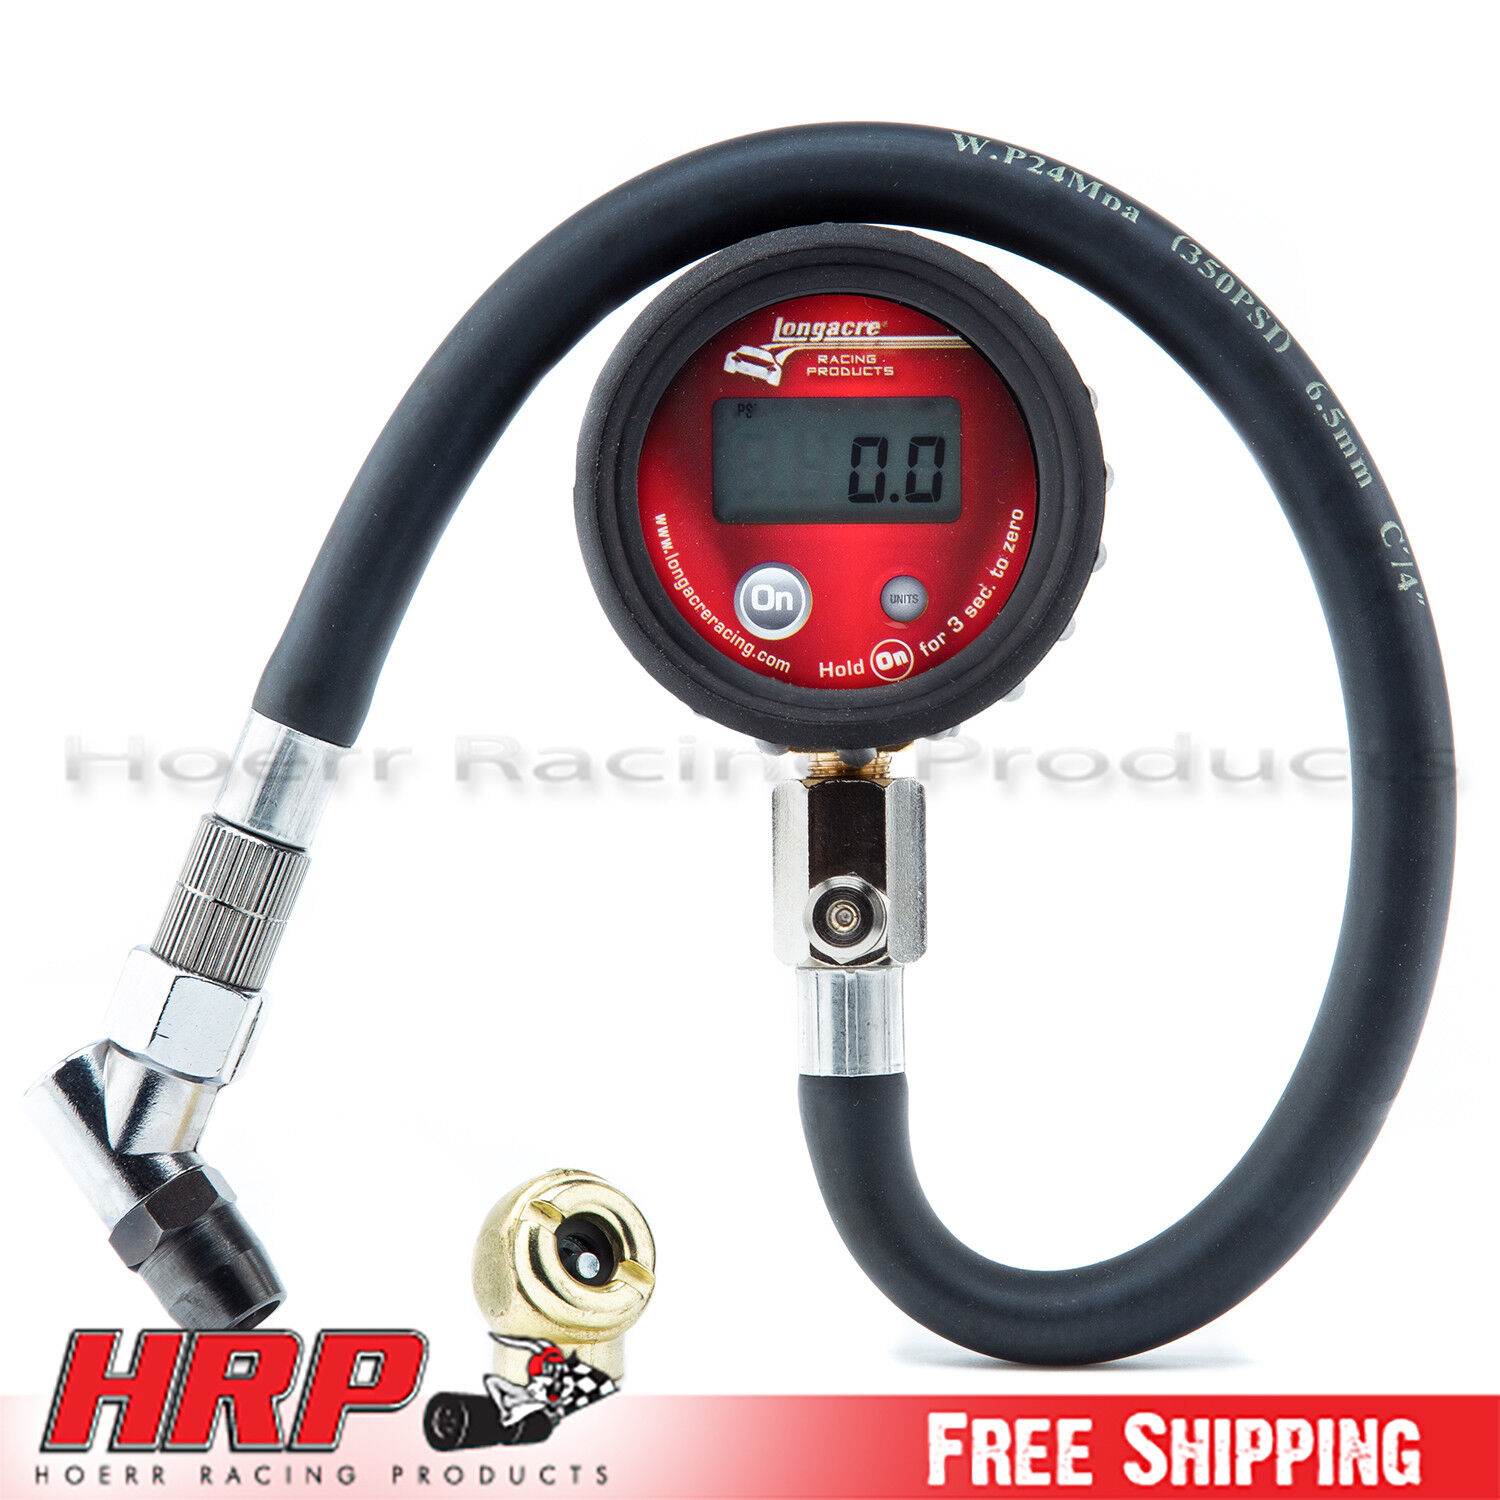 Longacre 53097 Digital Tire/Tyre Pressure Gauge 0-100 PSI w/ Display